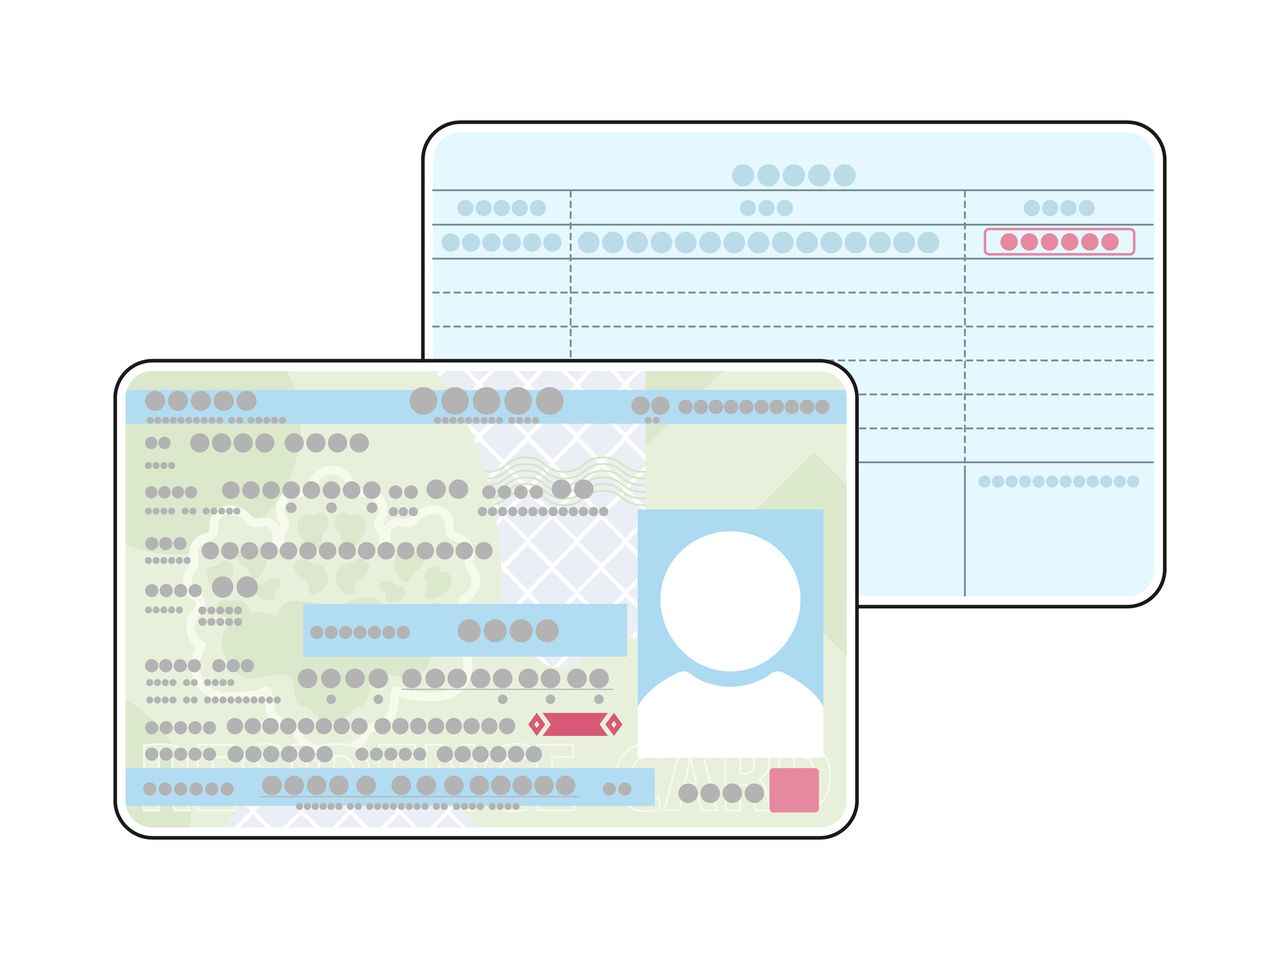 بطاقة إقامة الأجانب في اليابان. 